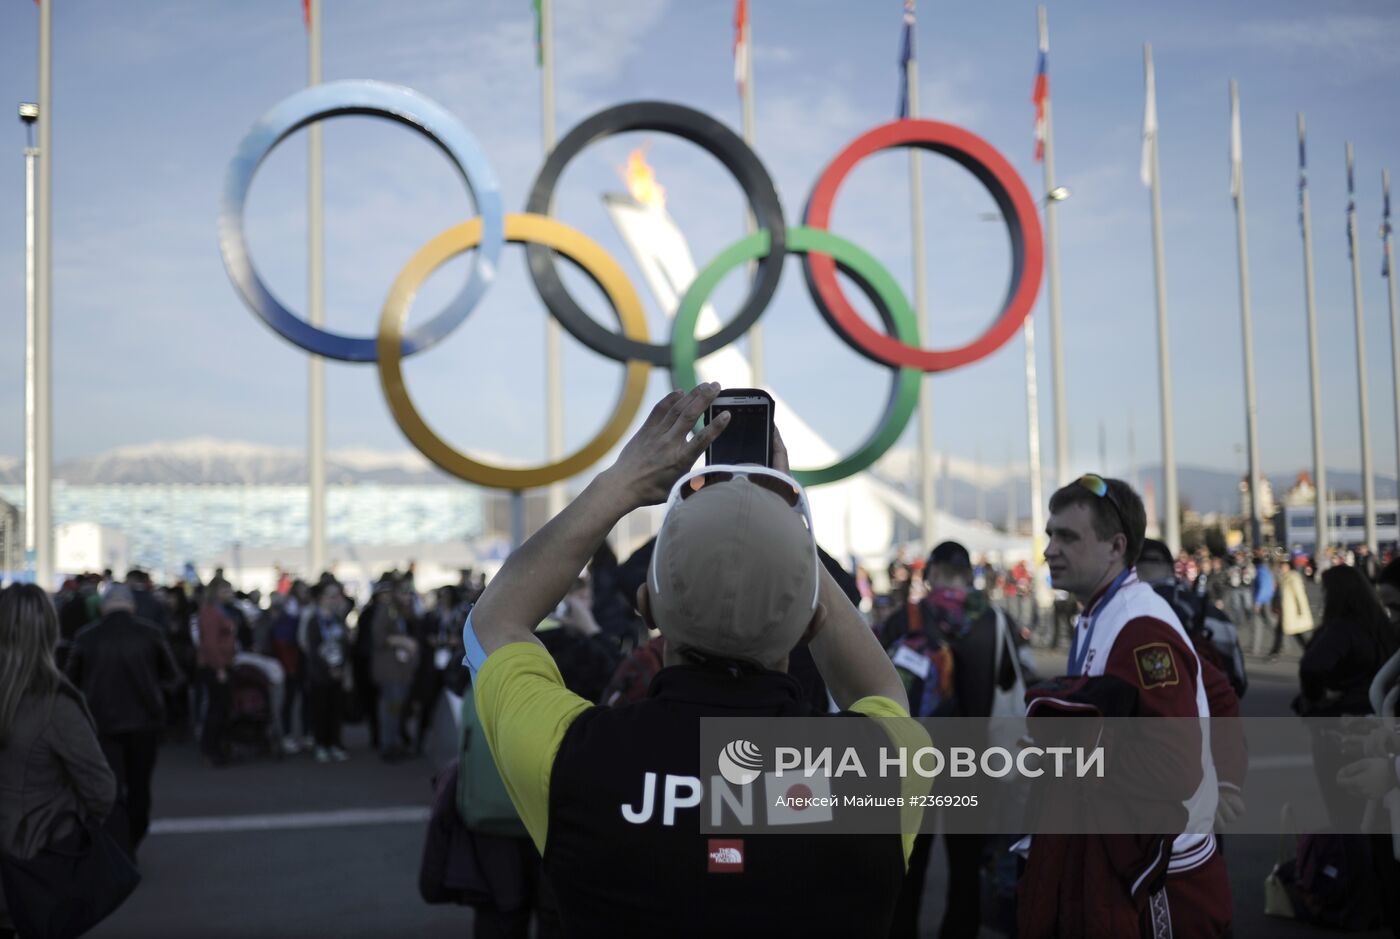 Олимпиада 2014. Жизнь Олимпийского парка